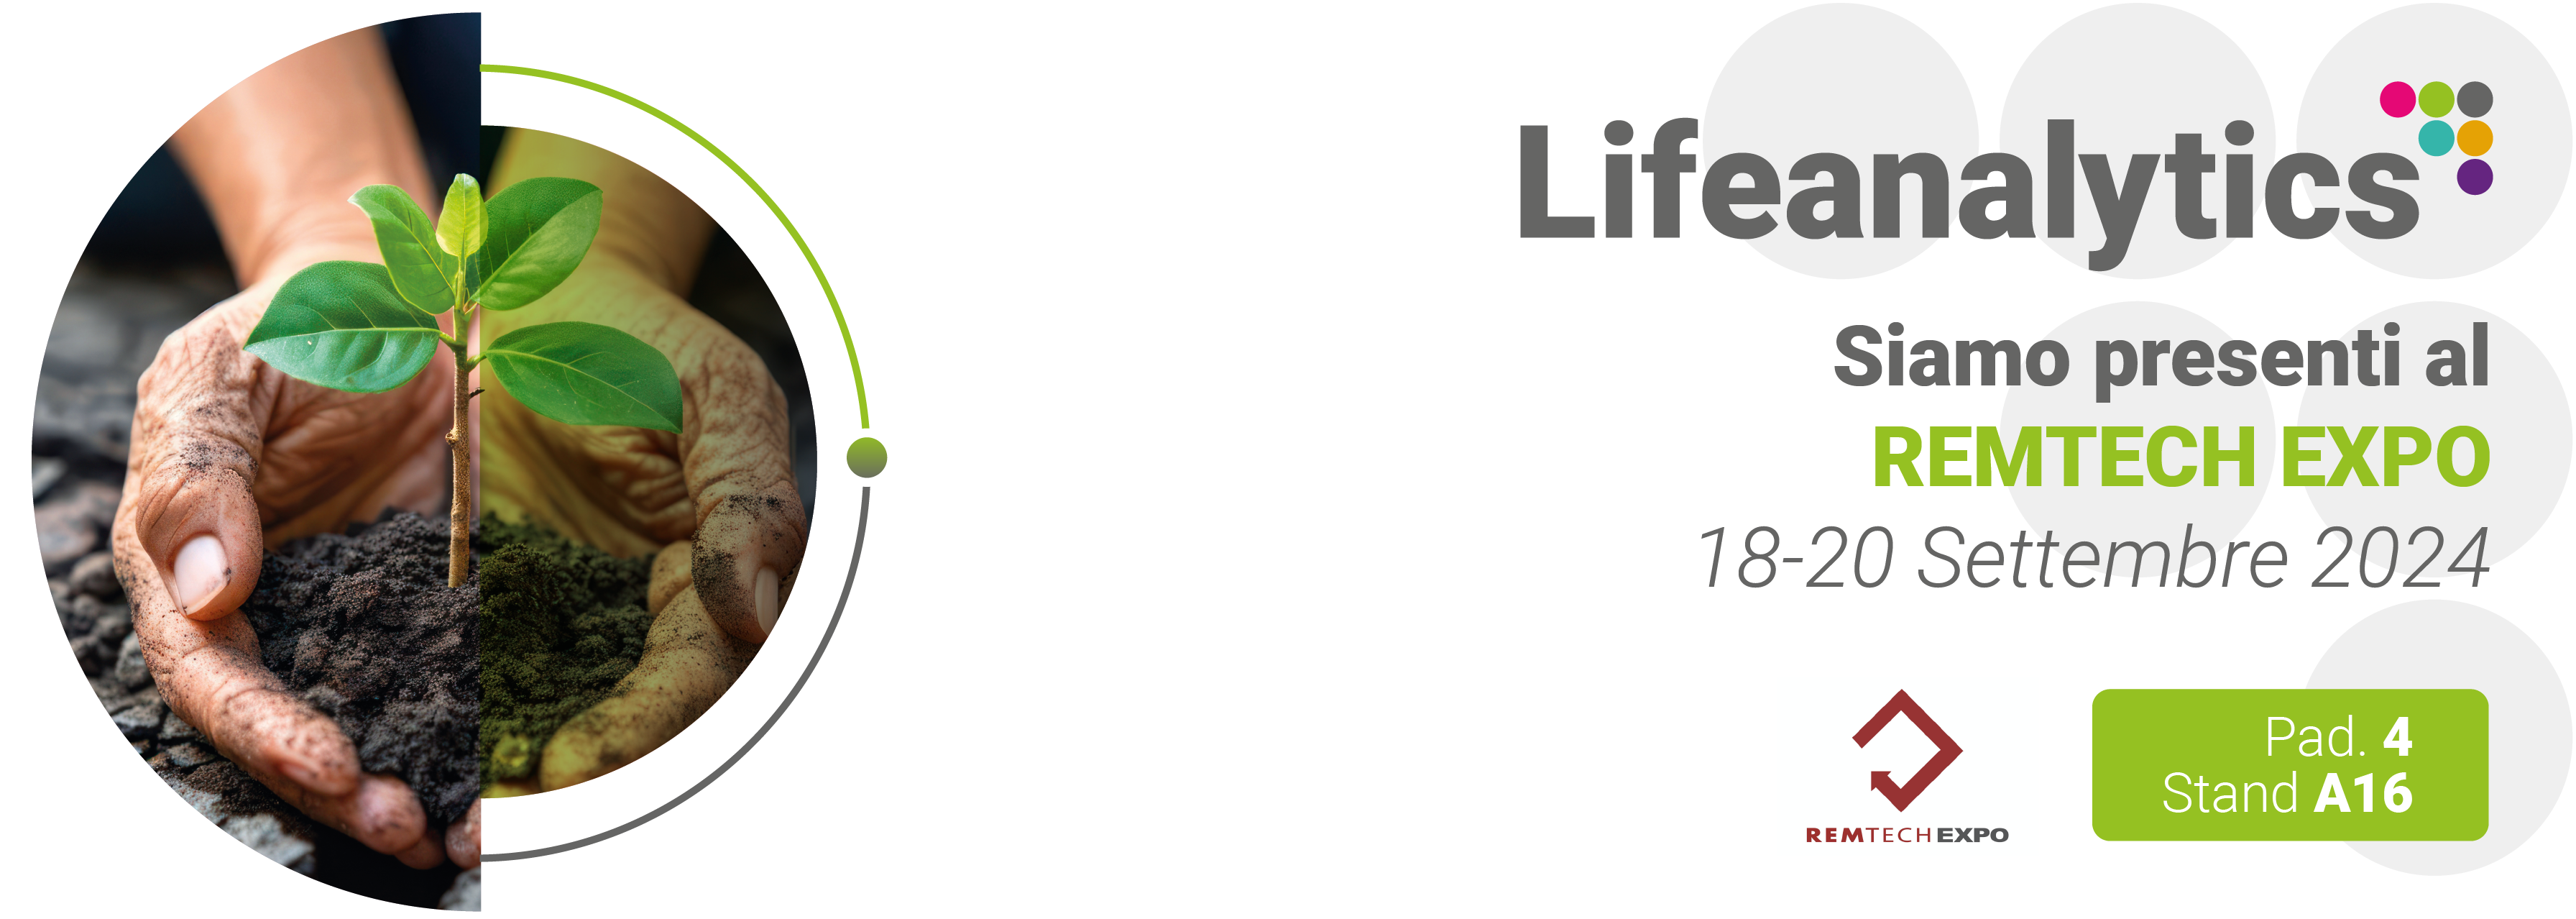 Immagine che promuove la fiera Remtech Expo che presidierà Lifeanalytics e si terrà a Ferrara dal 18 al 20 settembre 2024